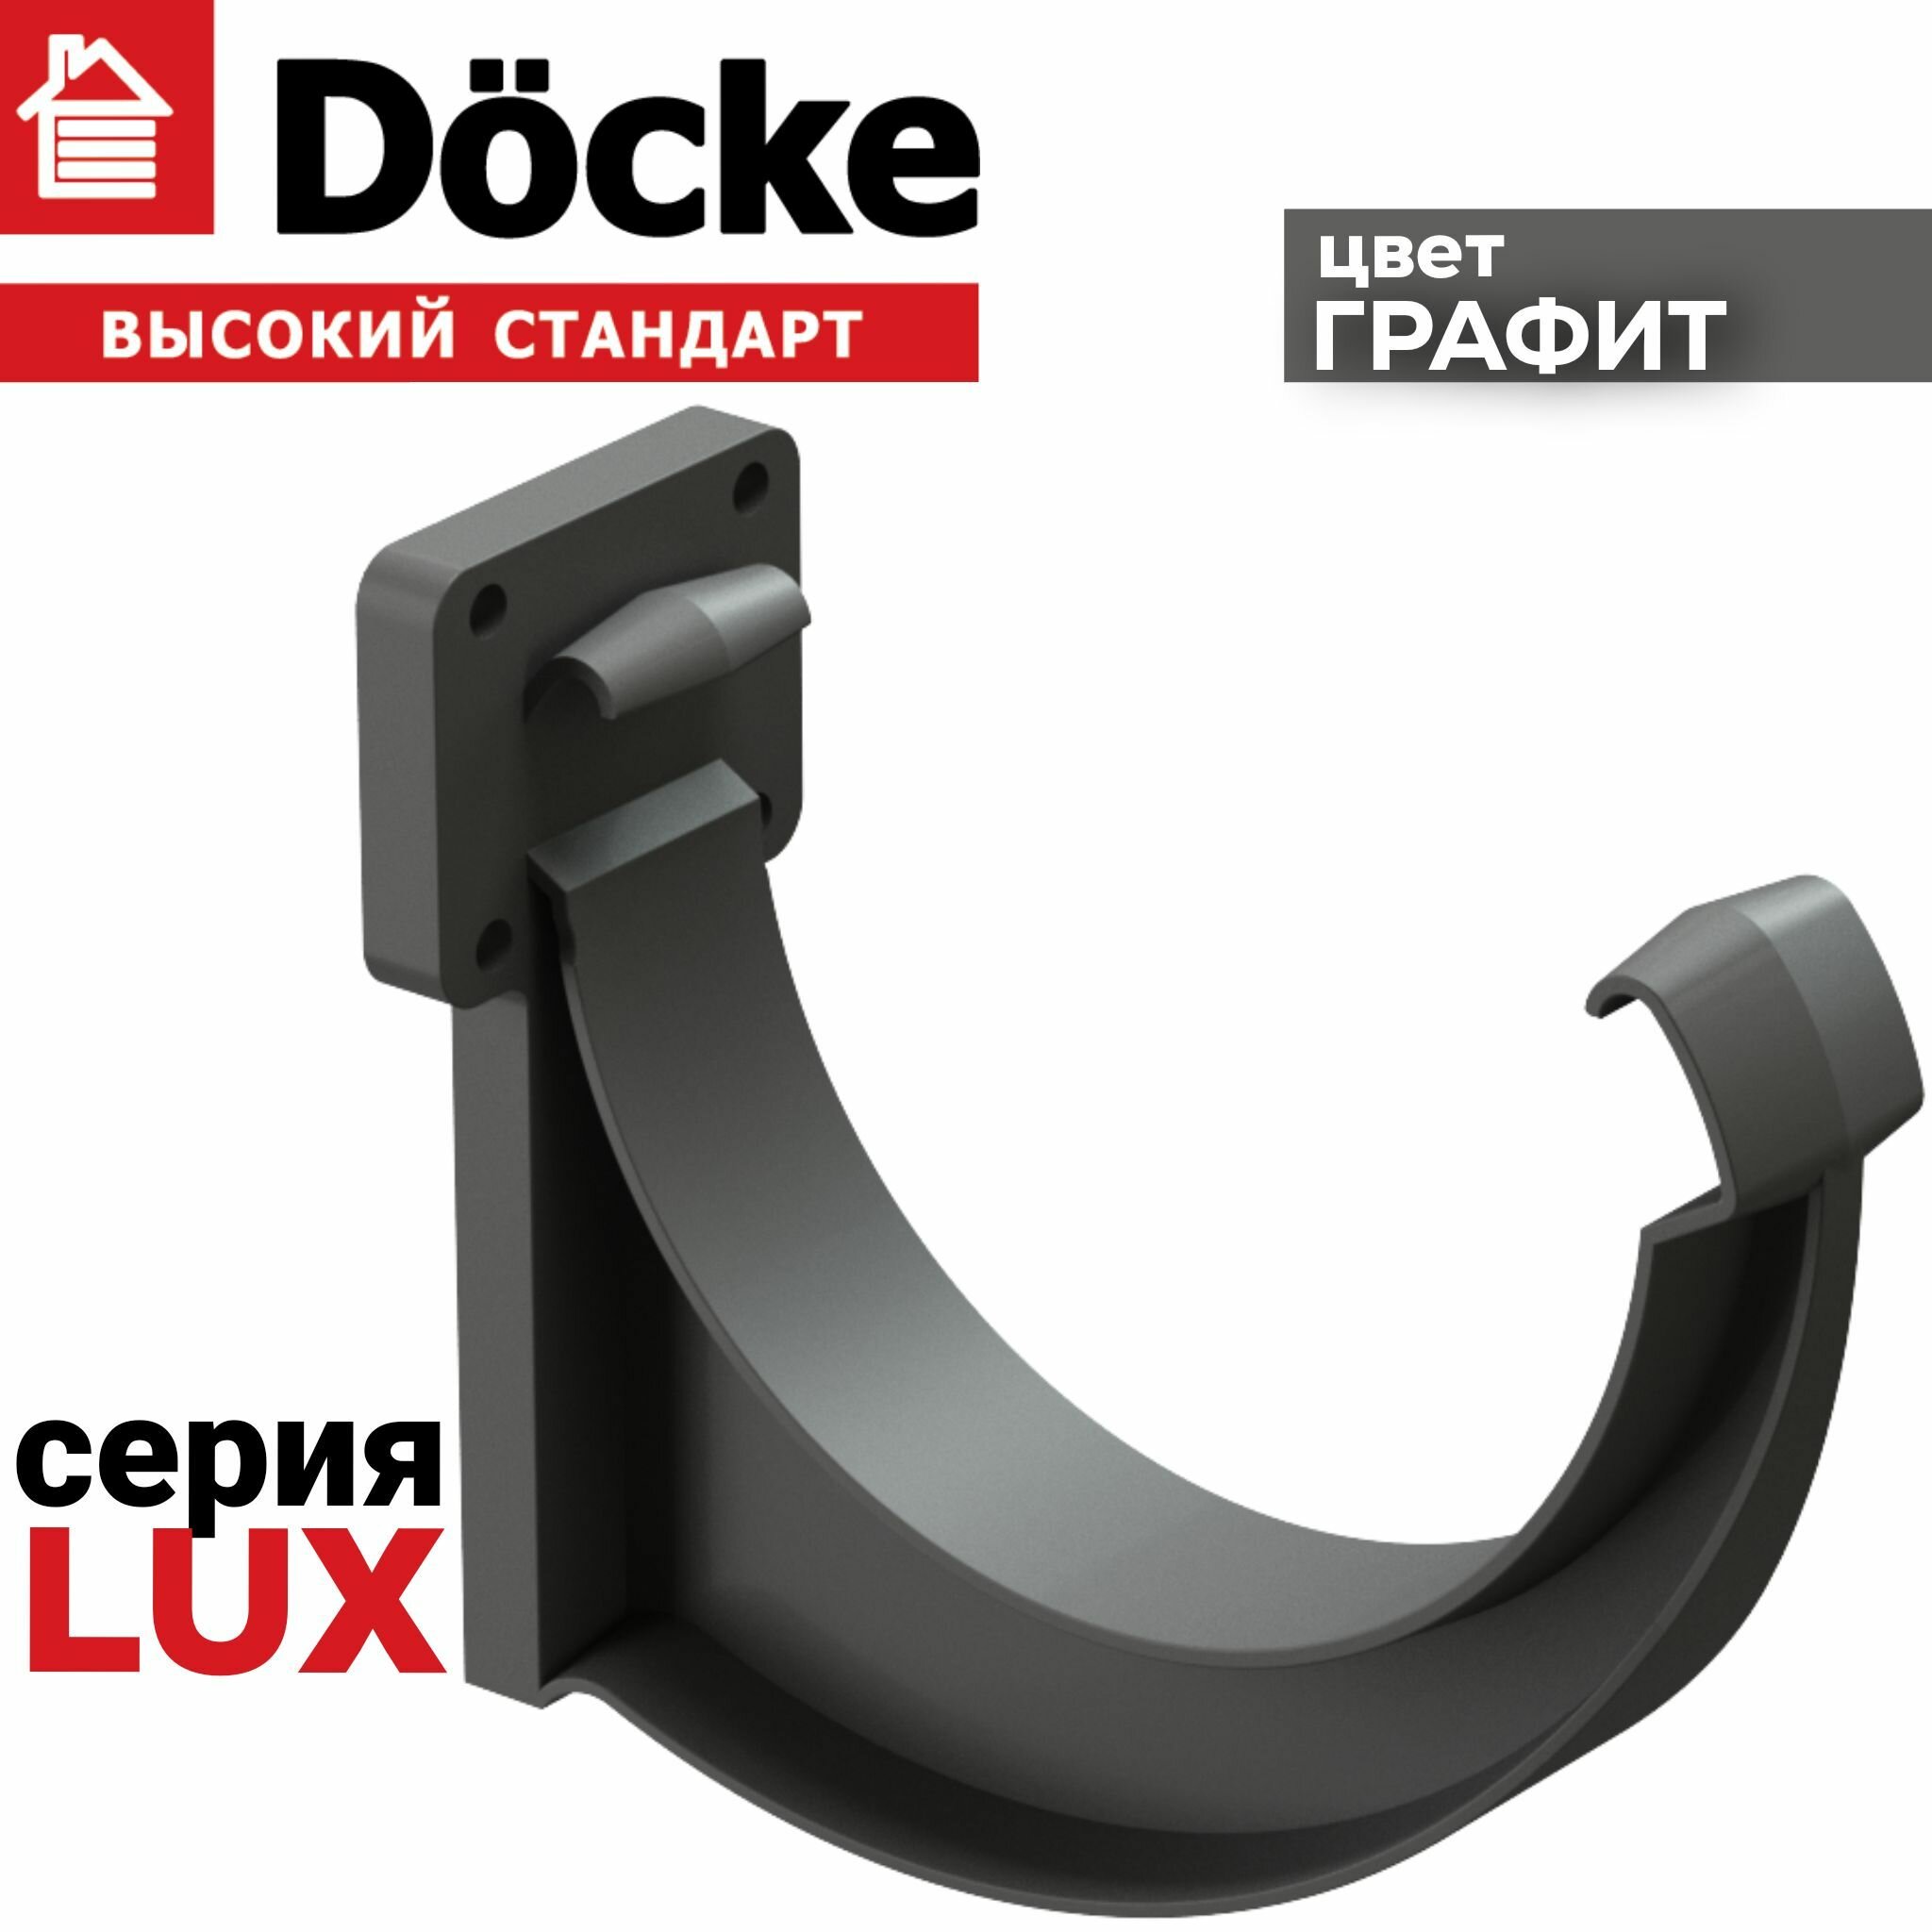 5 штук кронштейн желоба ПВХ Docke Lux (Деке Люкс) крюк коричневый шоколад (RAL 8019) держатель желоба